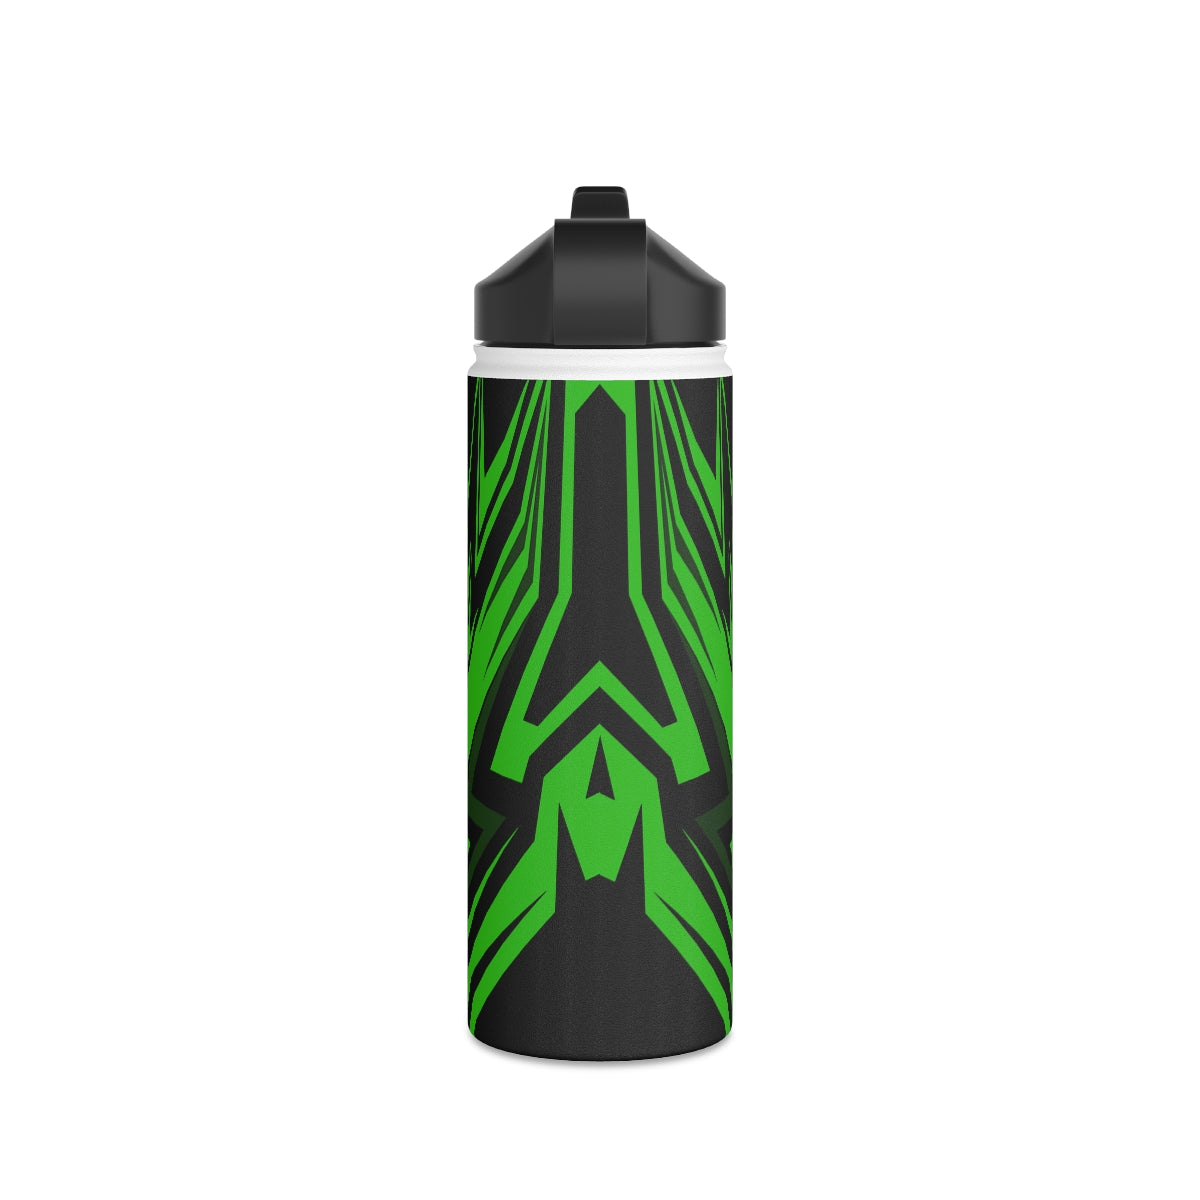 JJ Green Giant Stainless Steel Water Bottle, Standard Lid